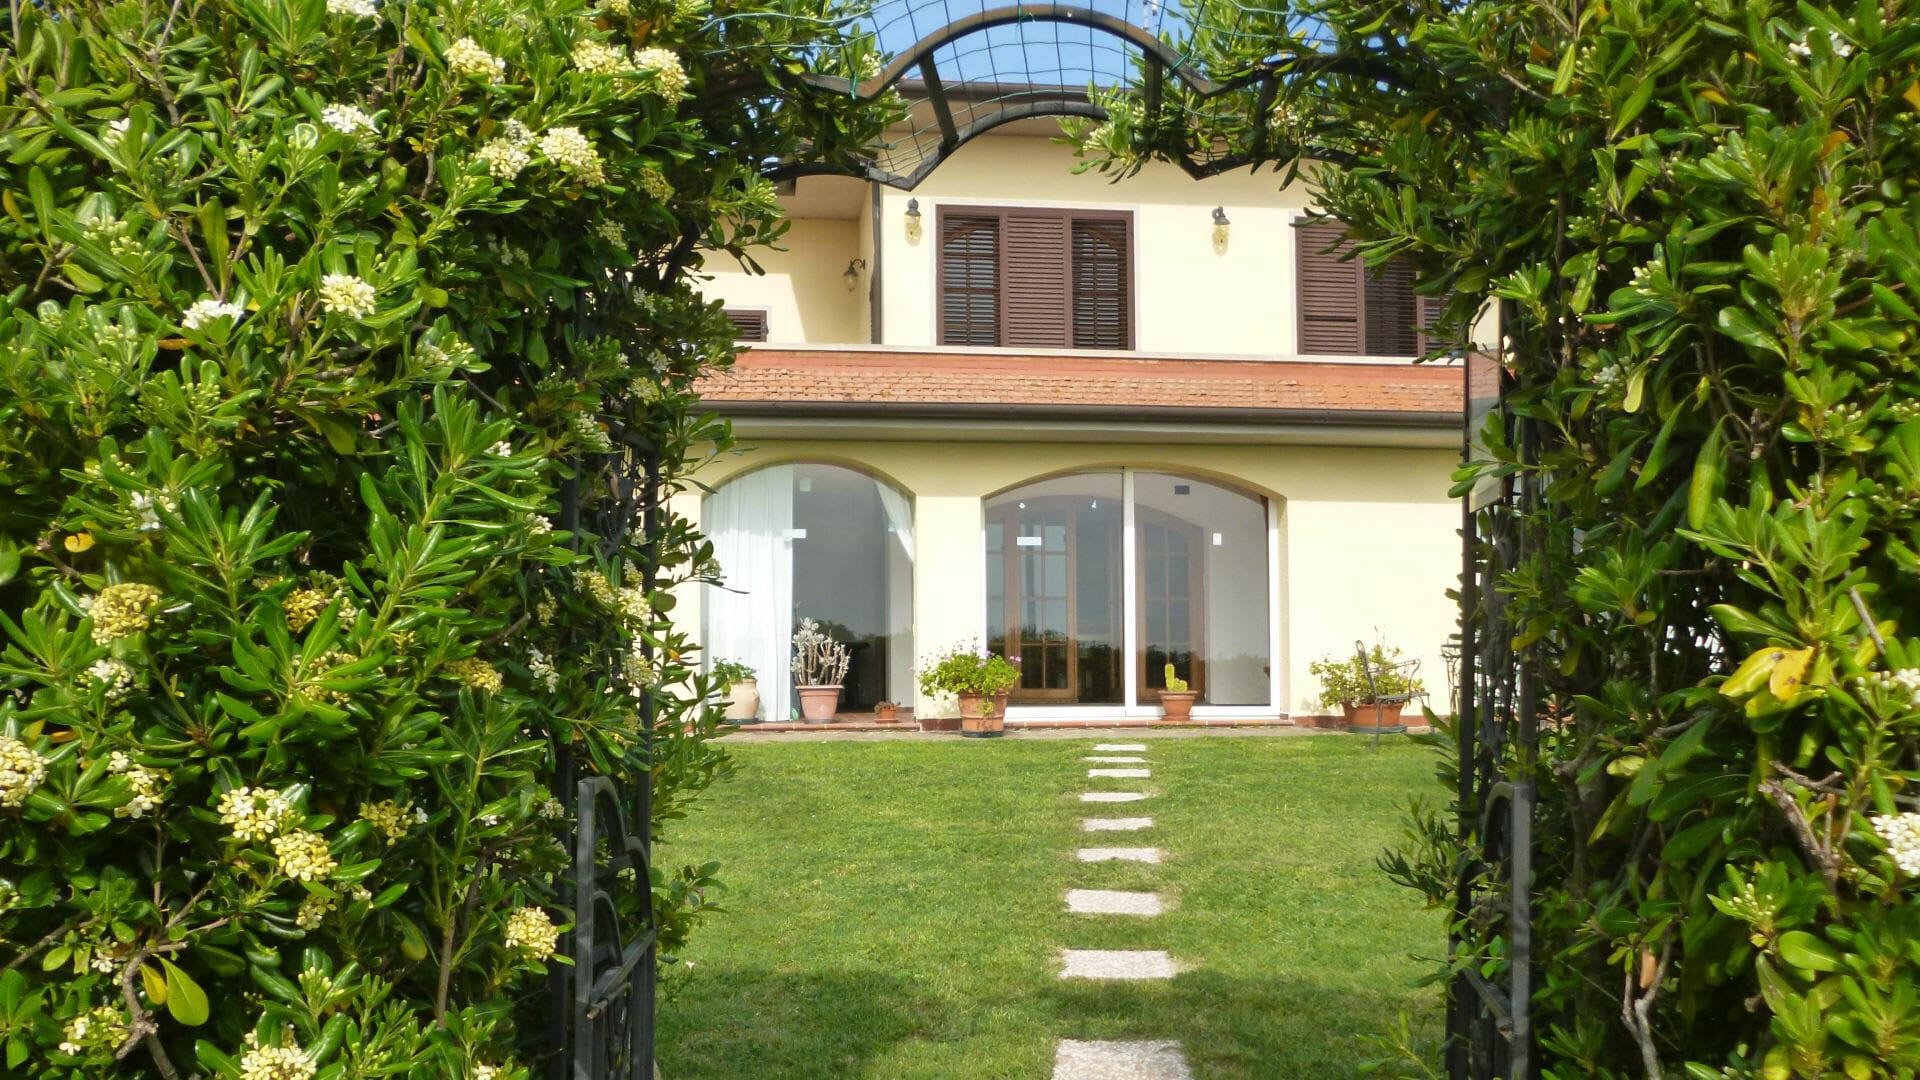 Villa La Tagliola – Rosignano Marittimo